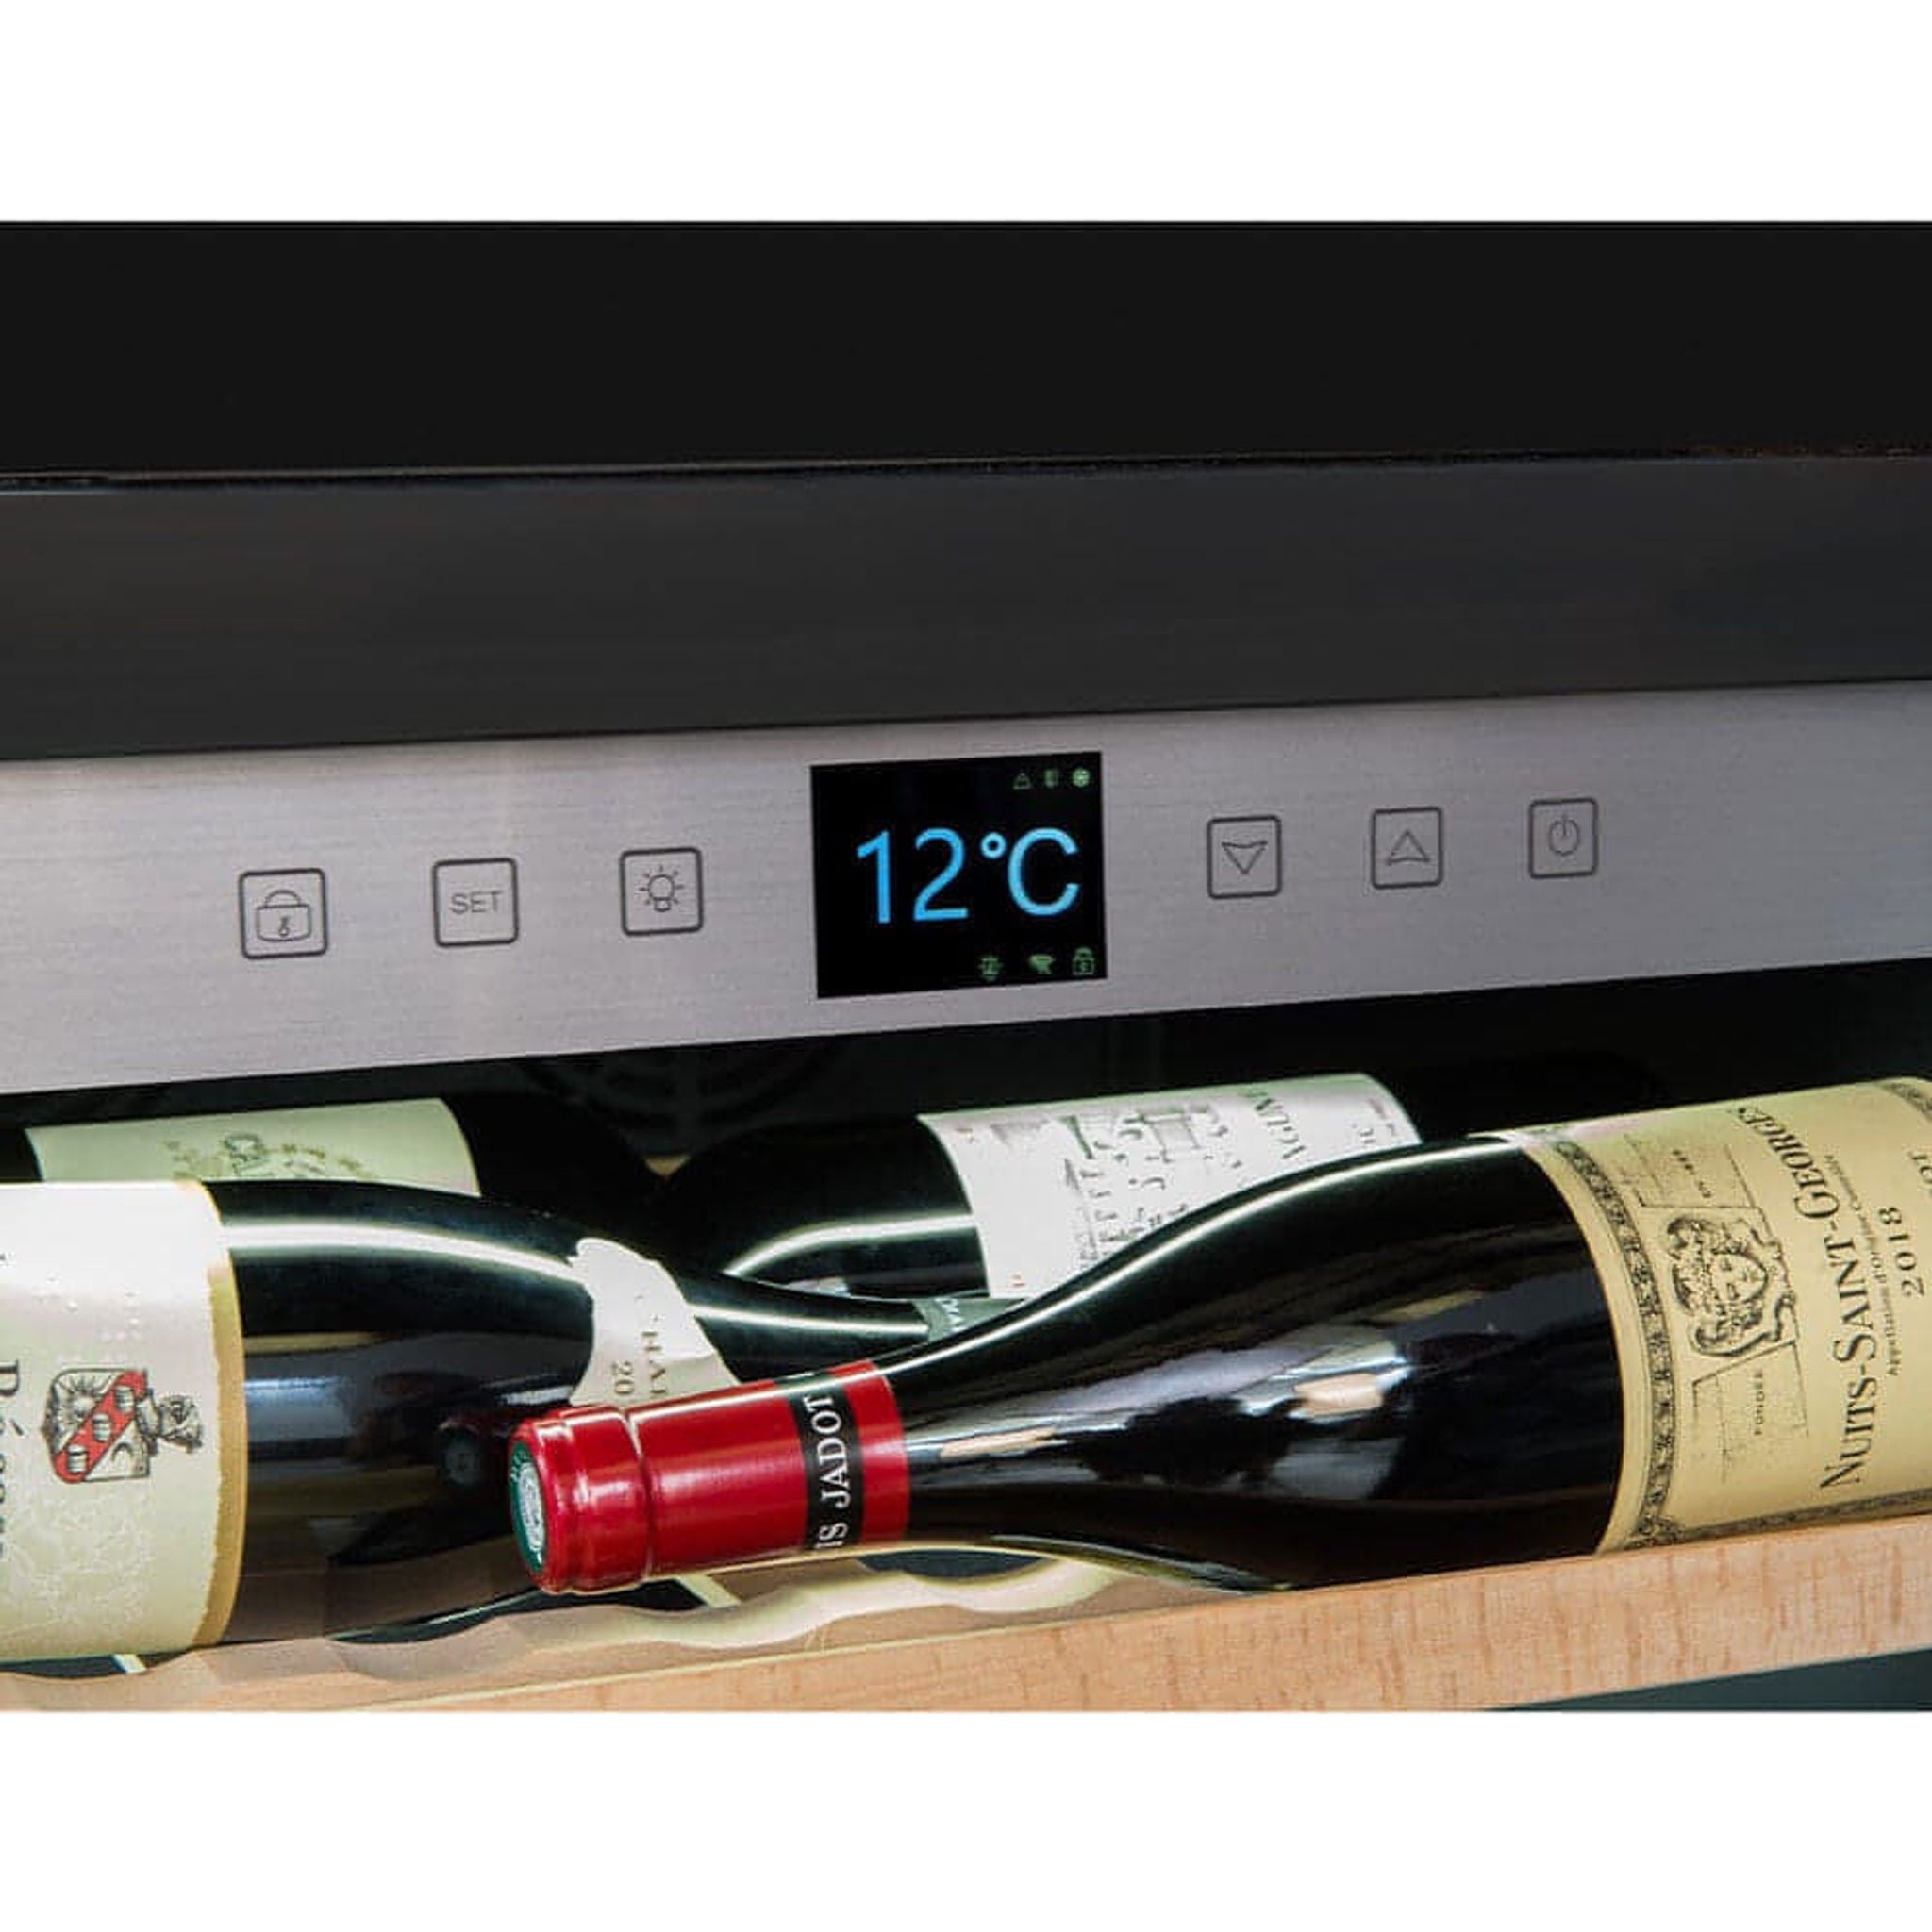 La Sommeliere - 185 Bottle Freestanding Single Zone Wine Cabinet APOGEE200